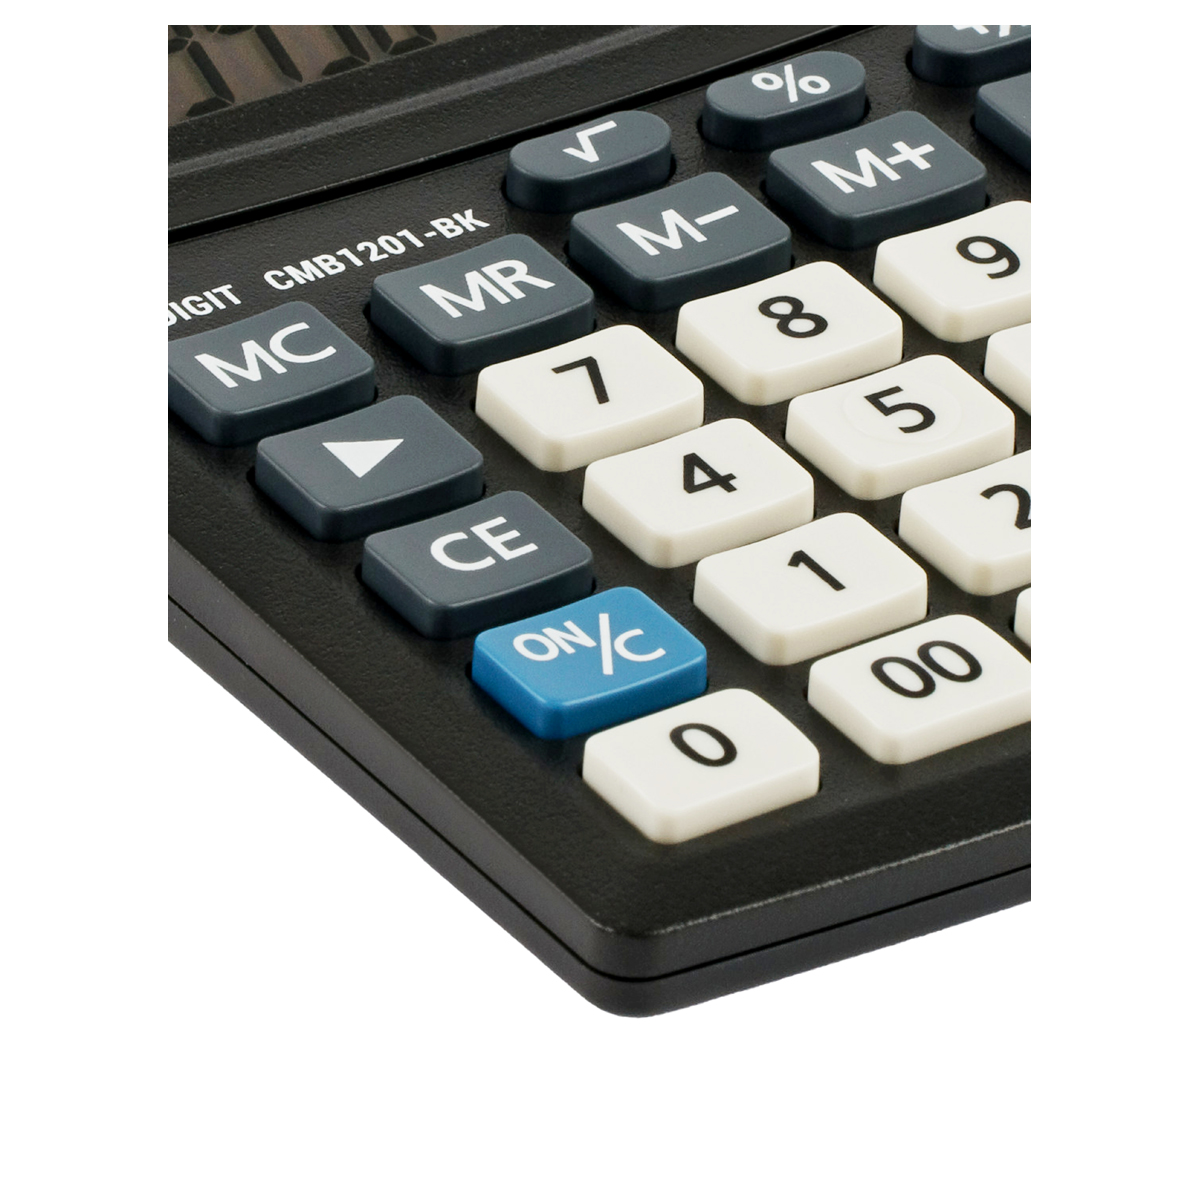 Калькулятор настольный Eleven Business Line CMB1201-BK, 12 разрядов, двойное питание, 102*137*31мм, 